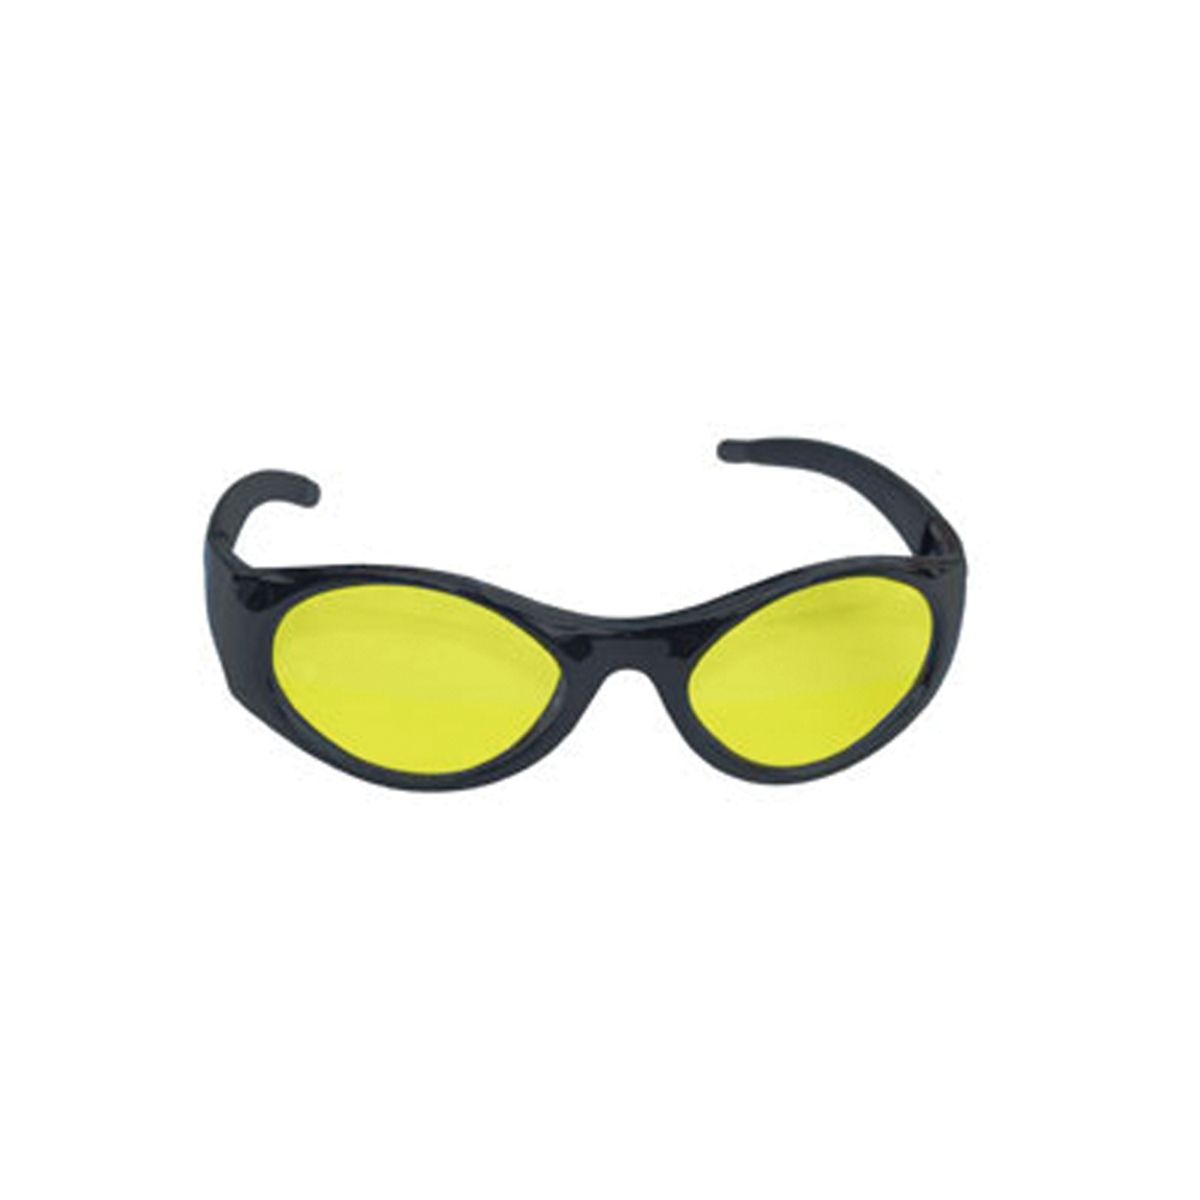 Stingers High Impact Eyewear - Black/Yellow